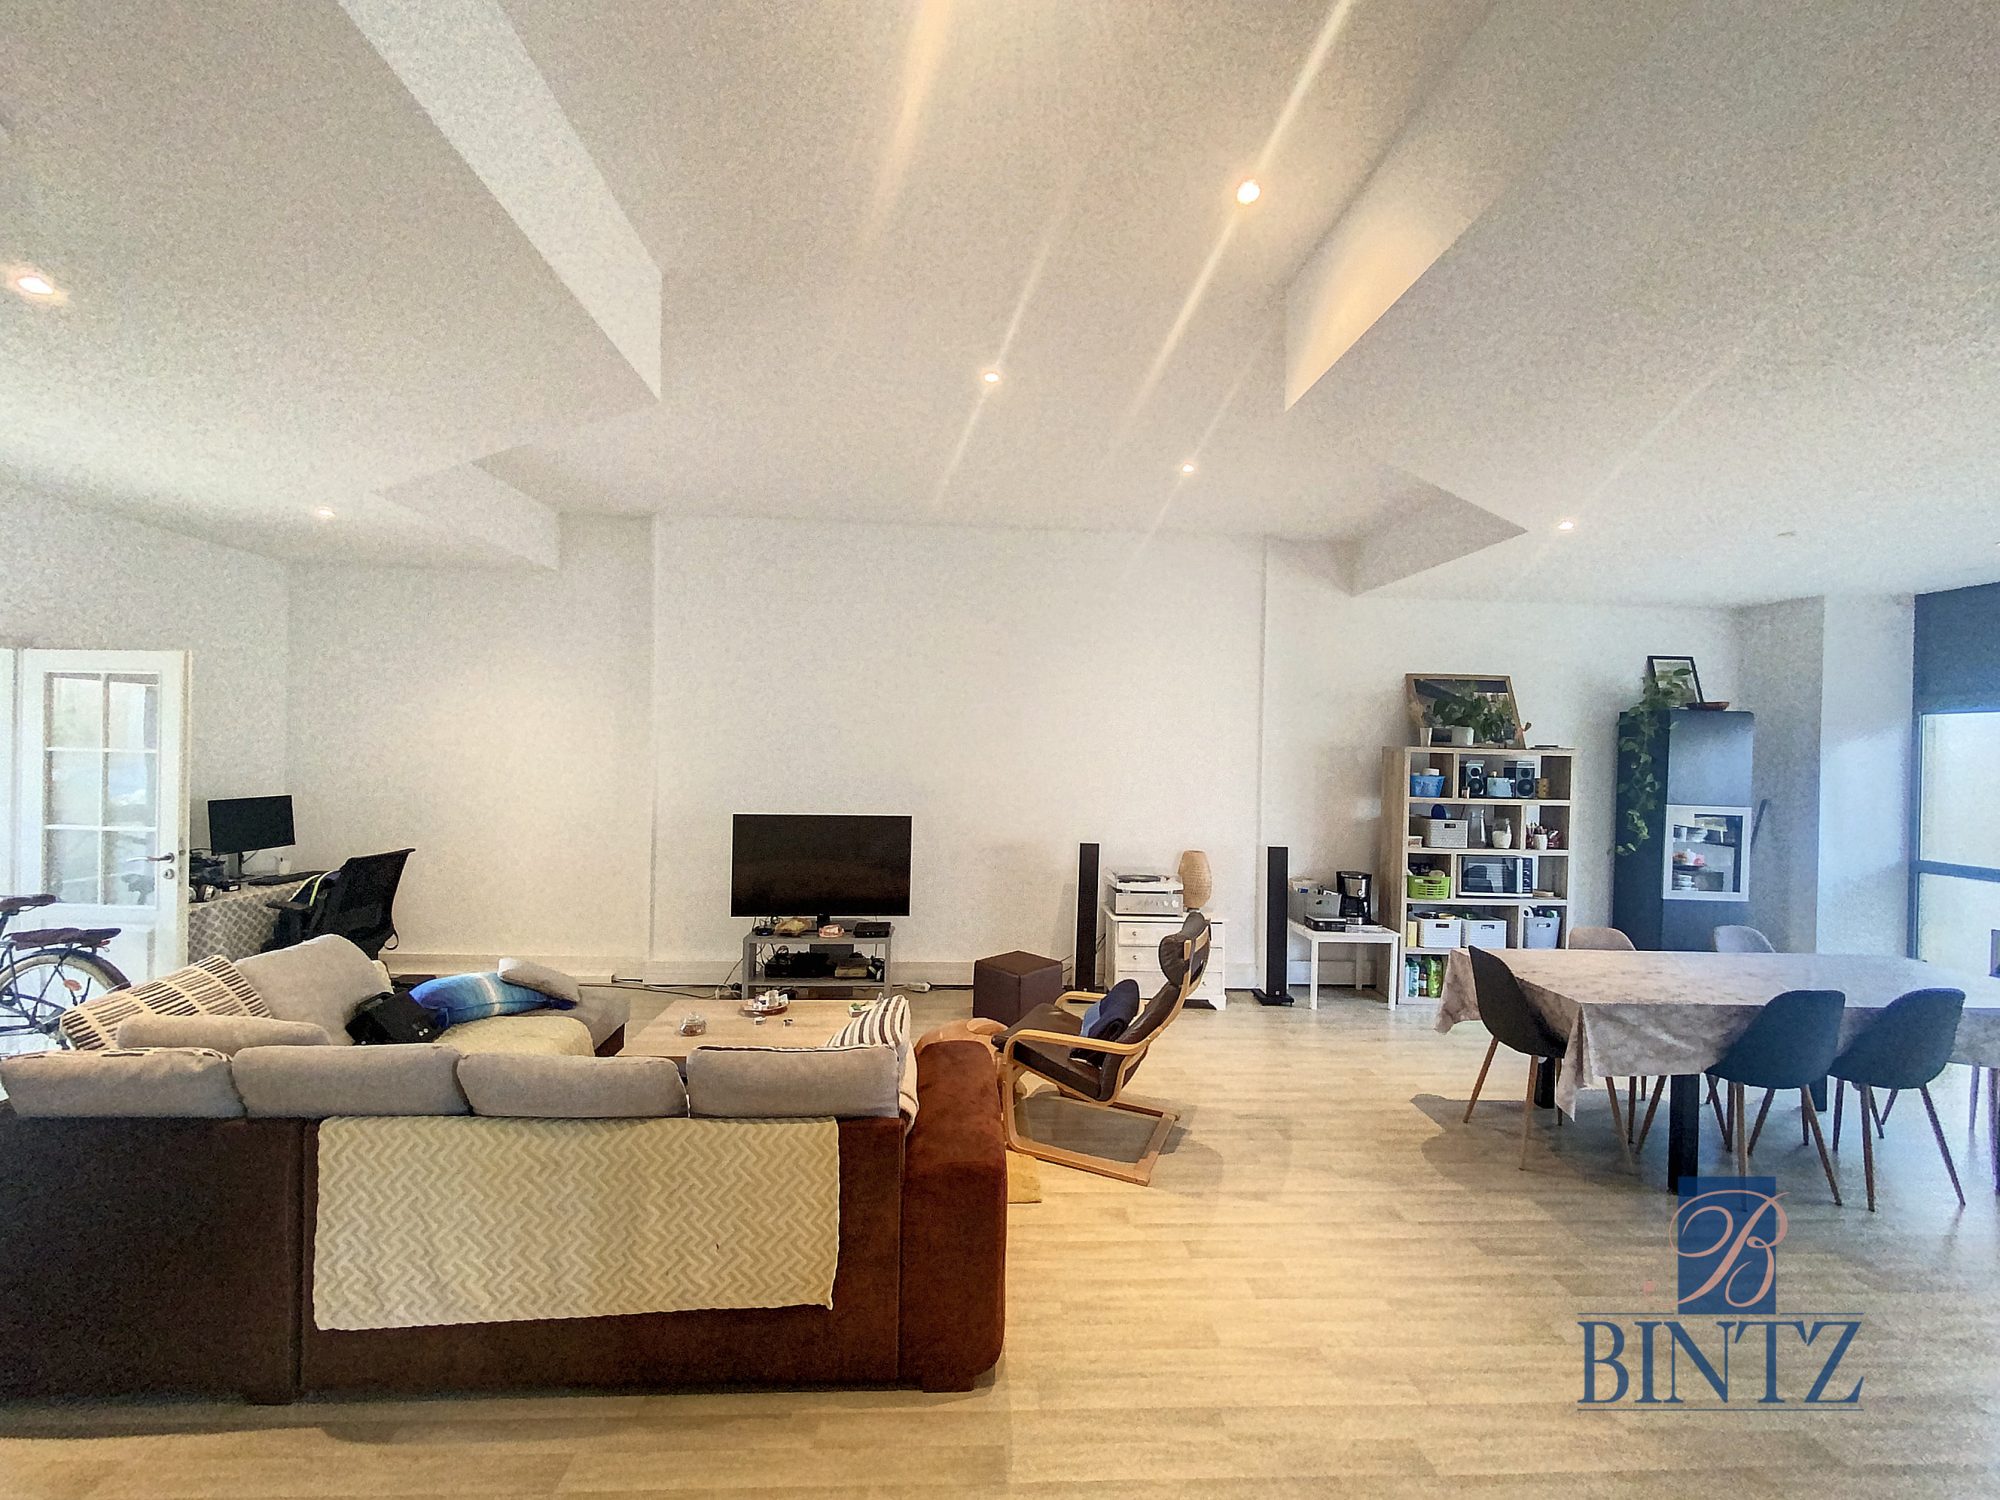 Appartement 122,32m2 dans Monument classé - vente immobilière - Bintz Immobilier - 10